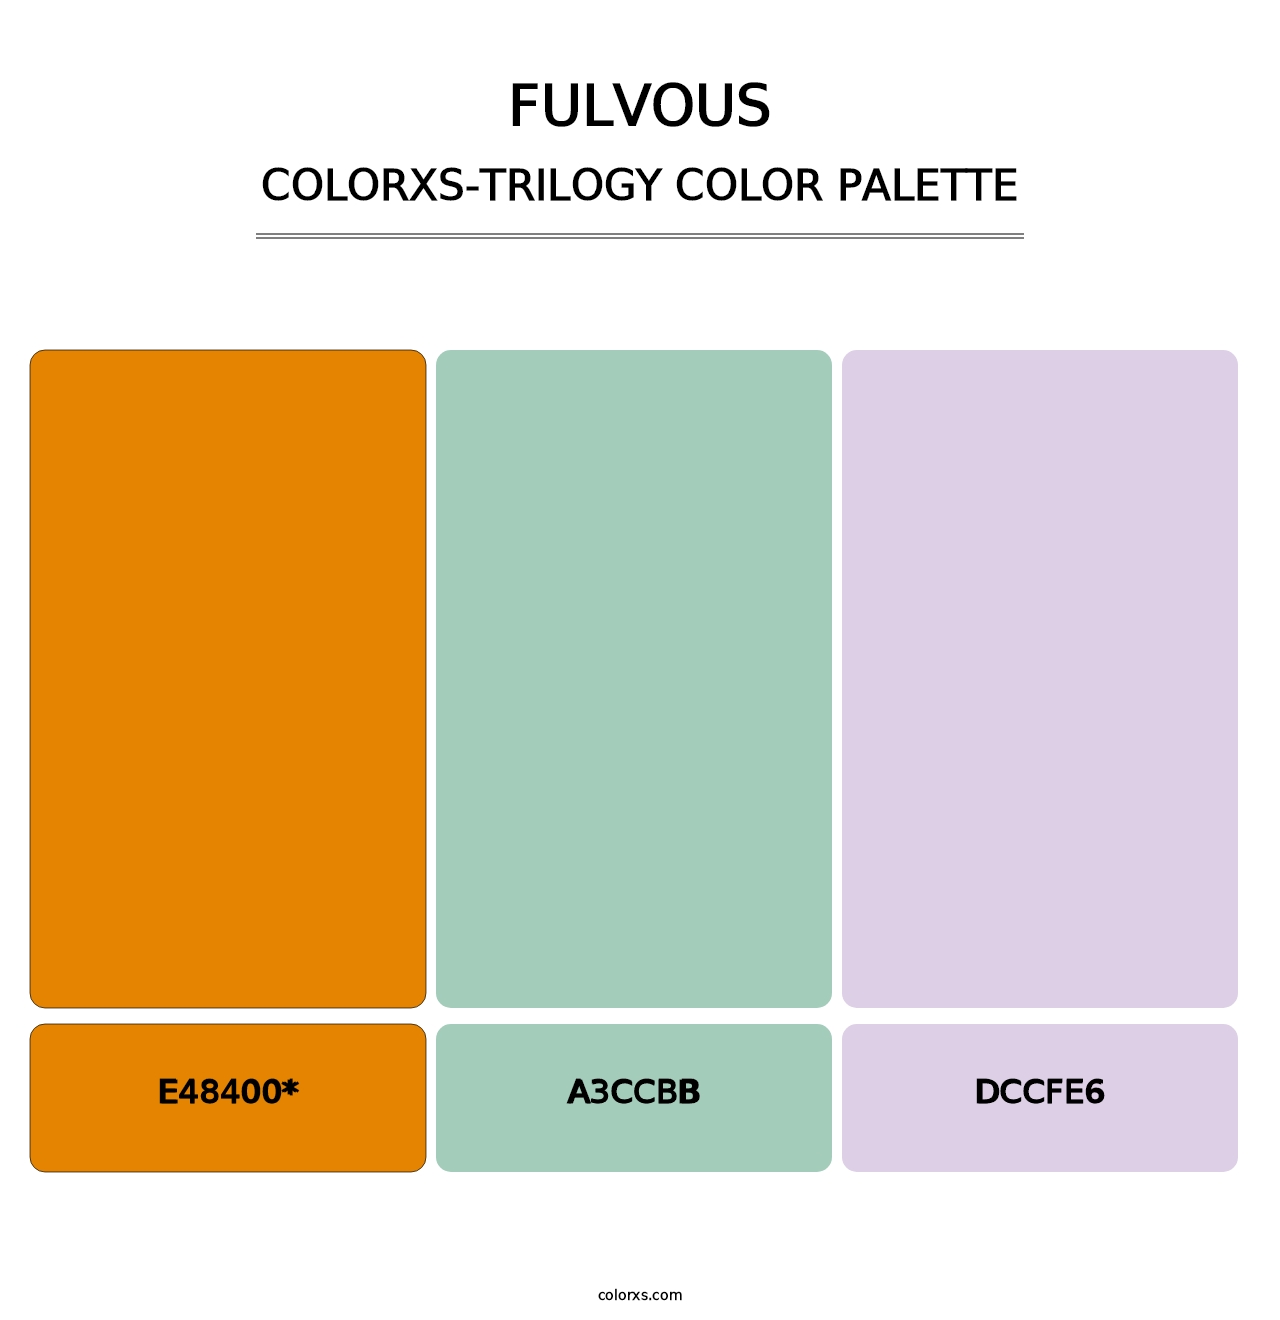 Fulvous - Colorxs Trilogy Palette